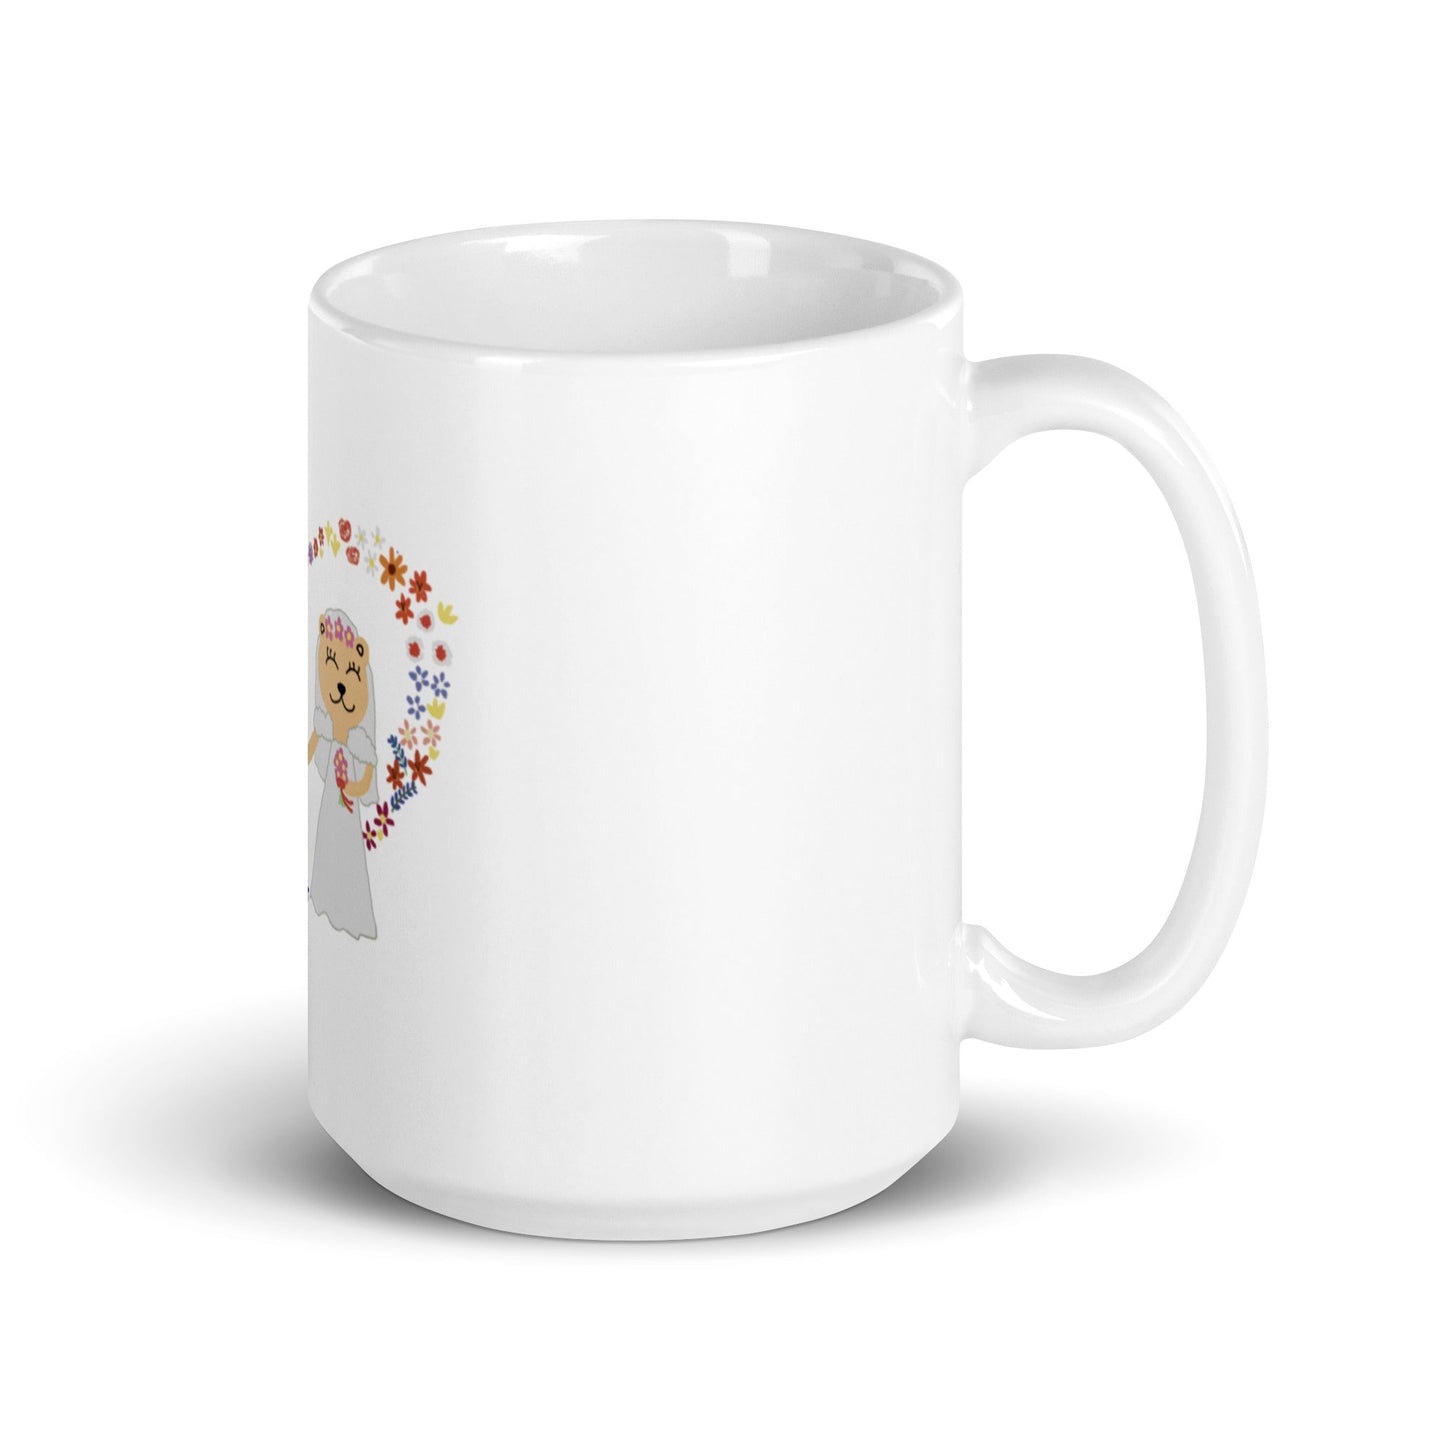 White glossy mug (Personalized)